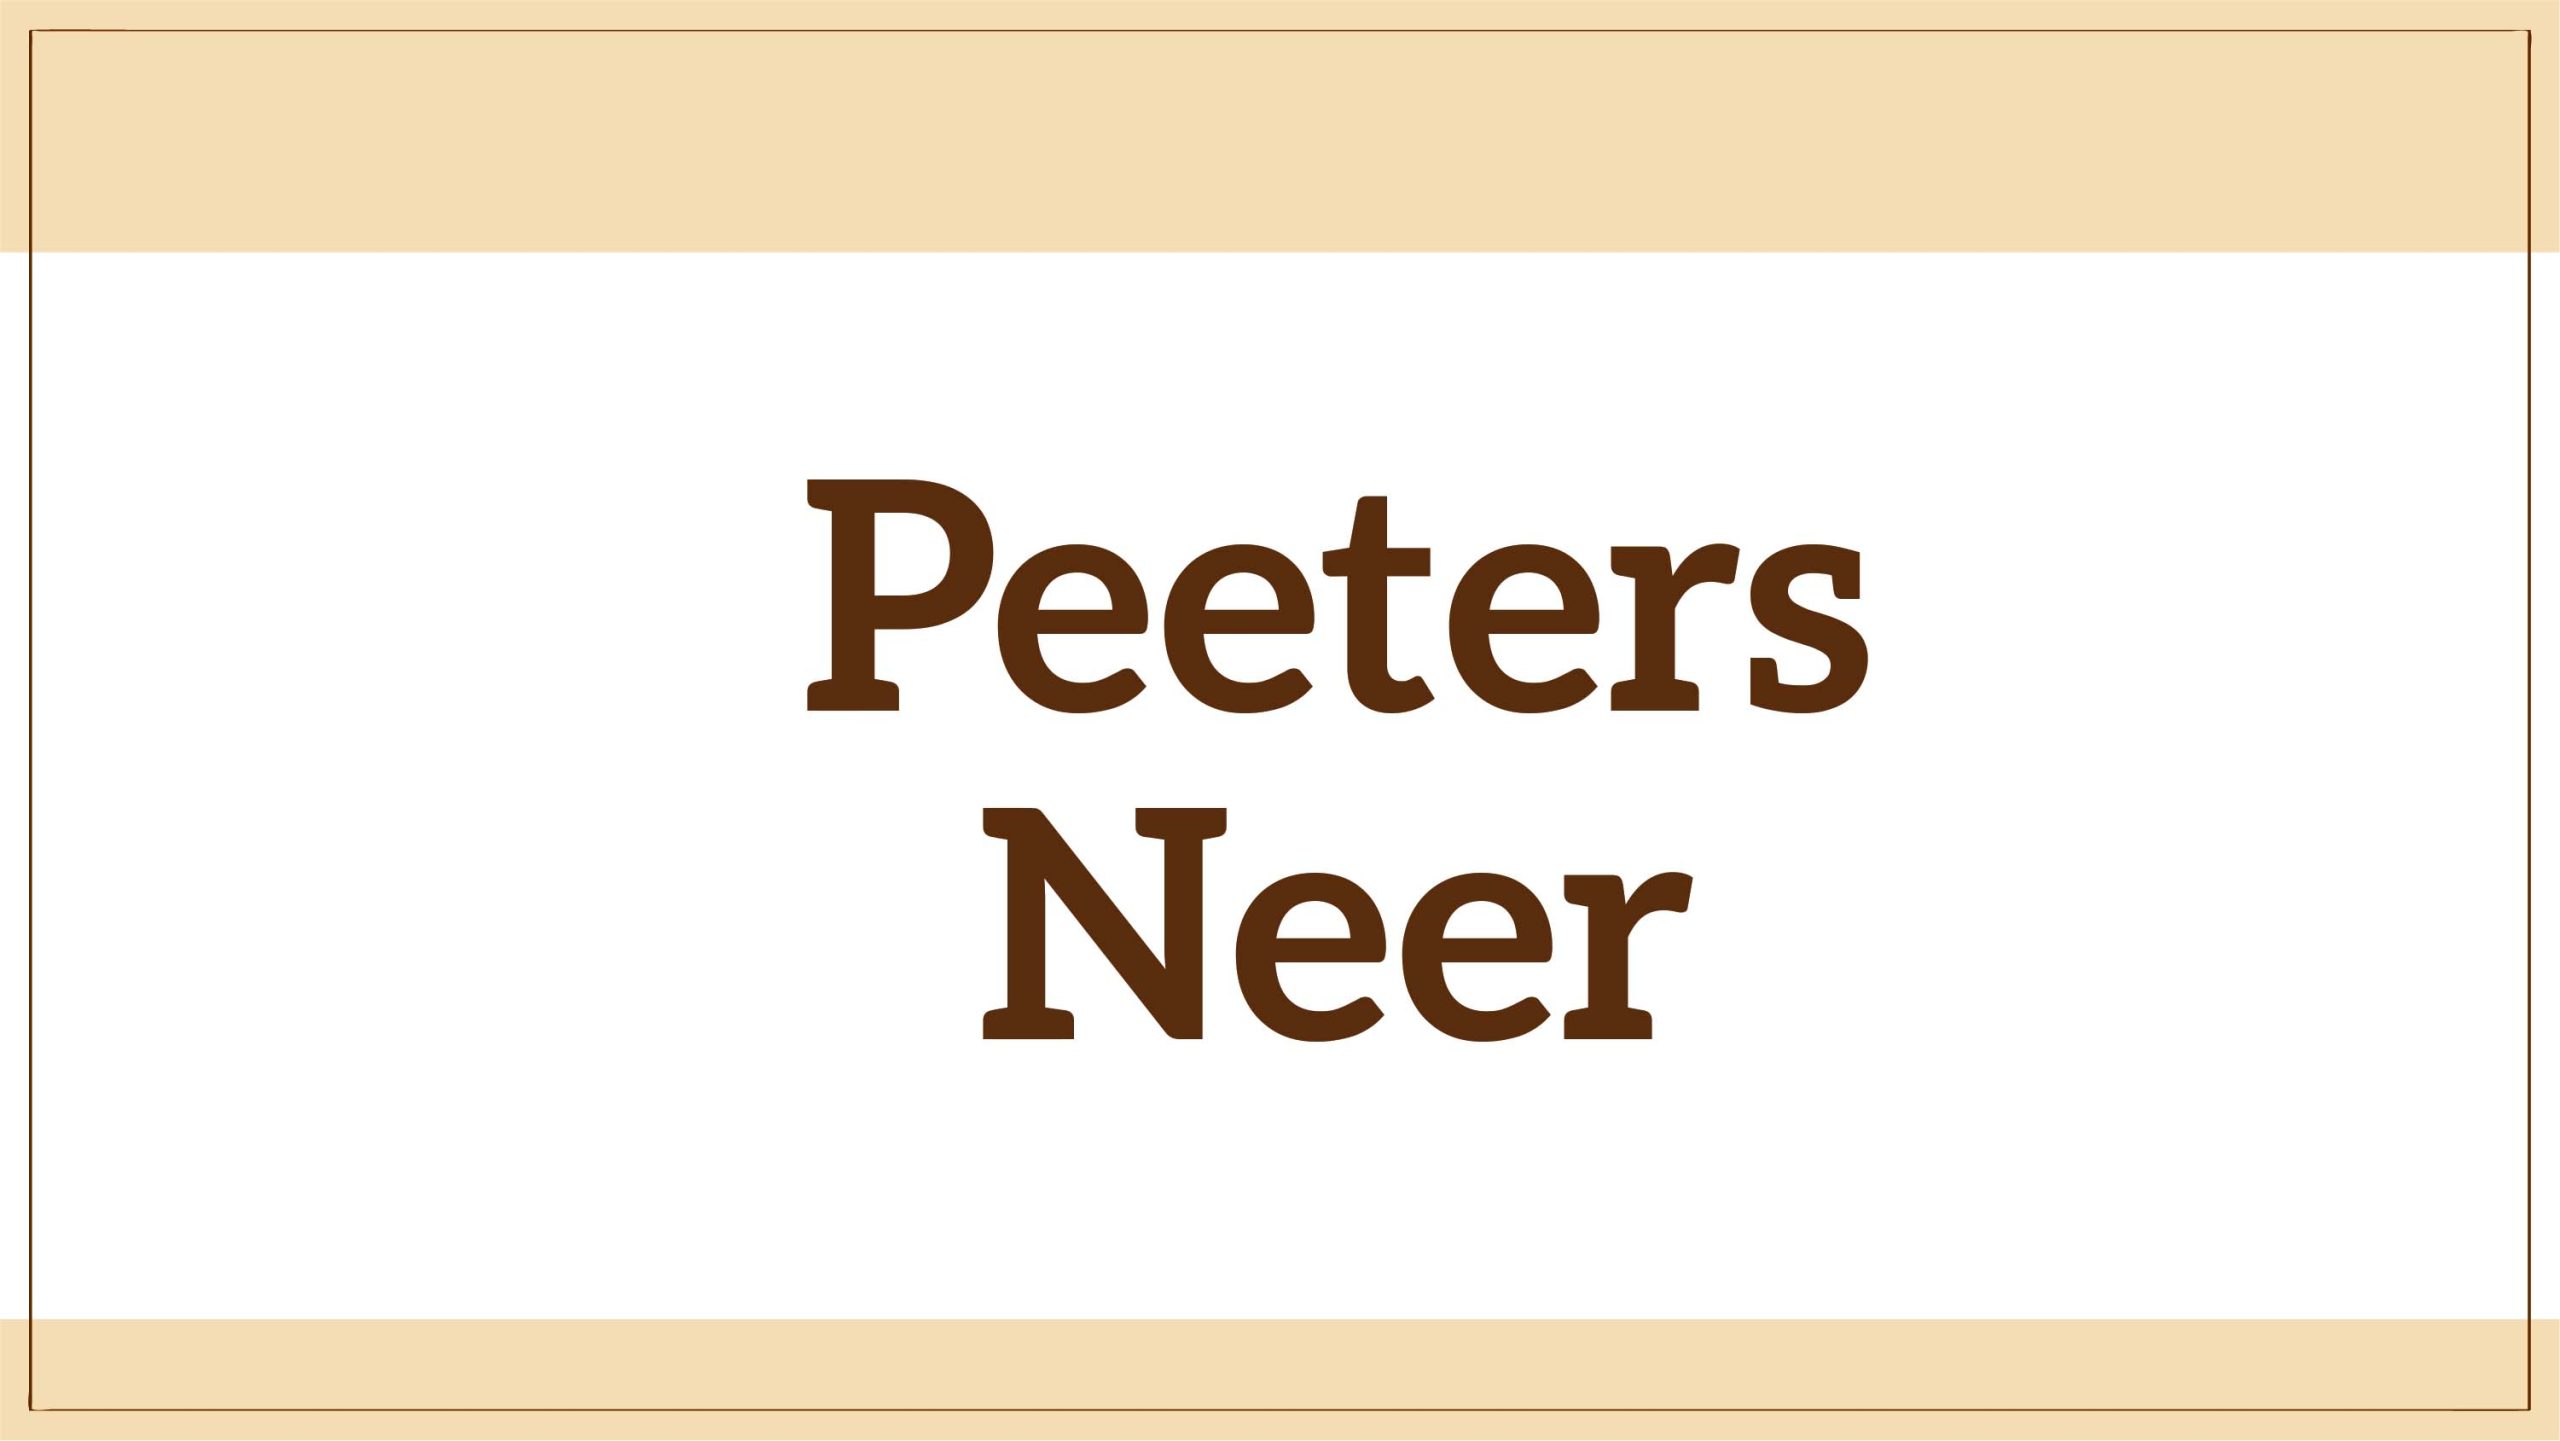 Peeters Neer